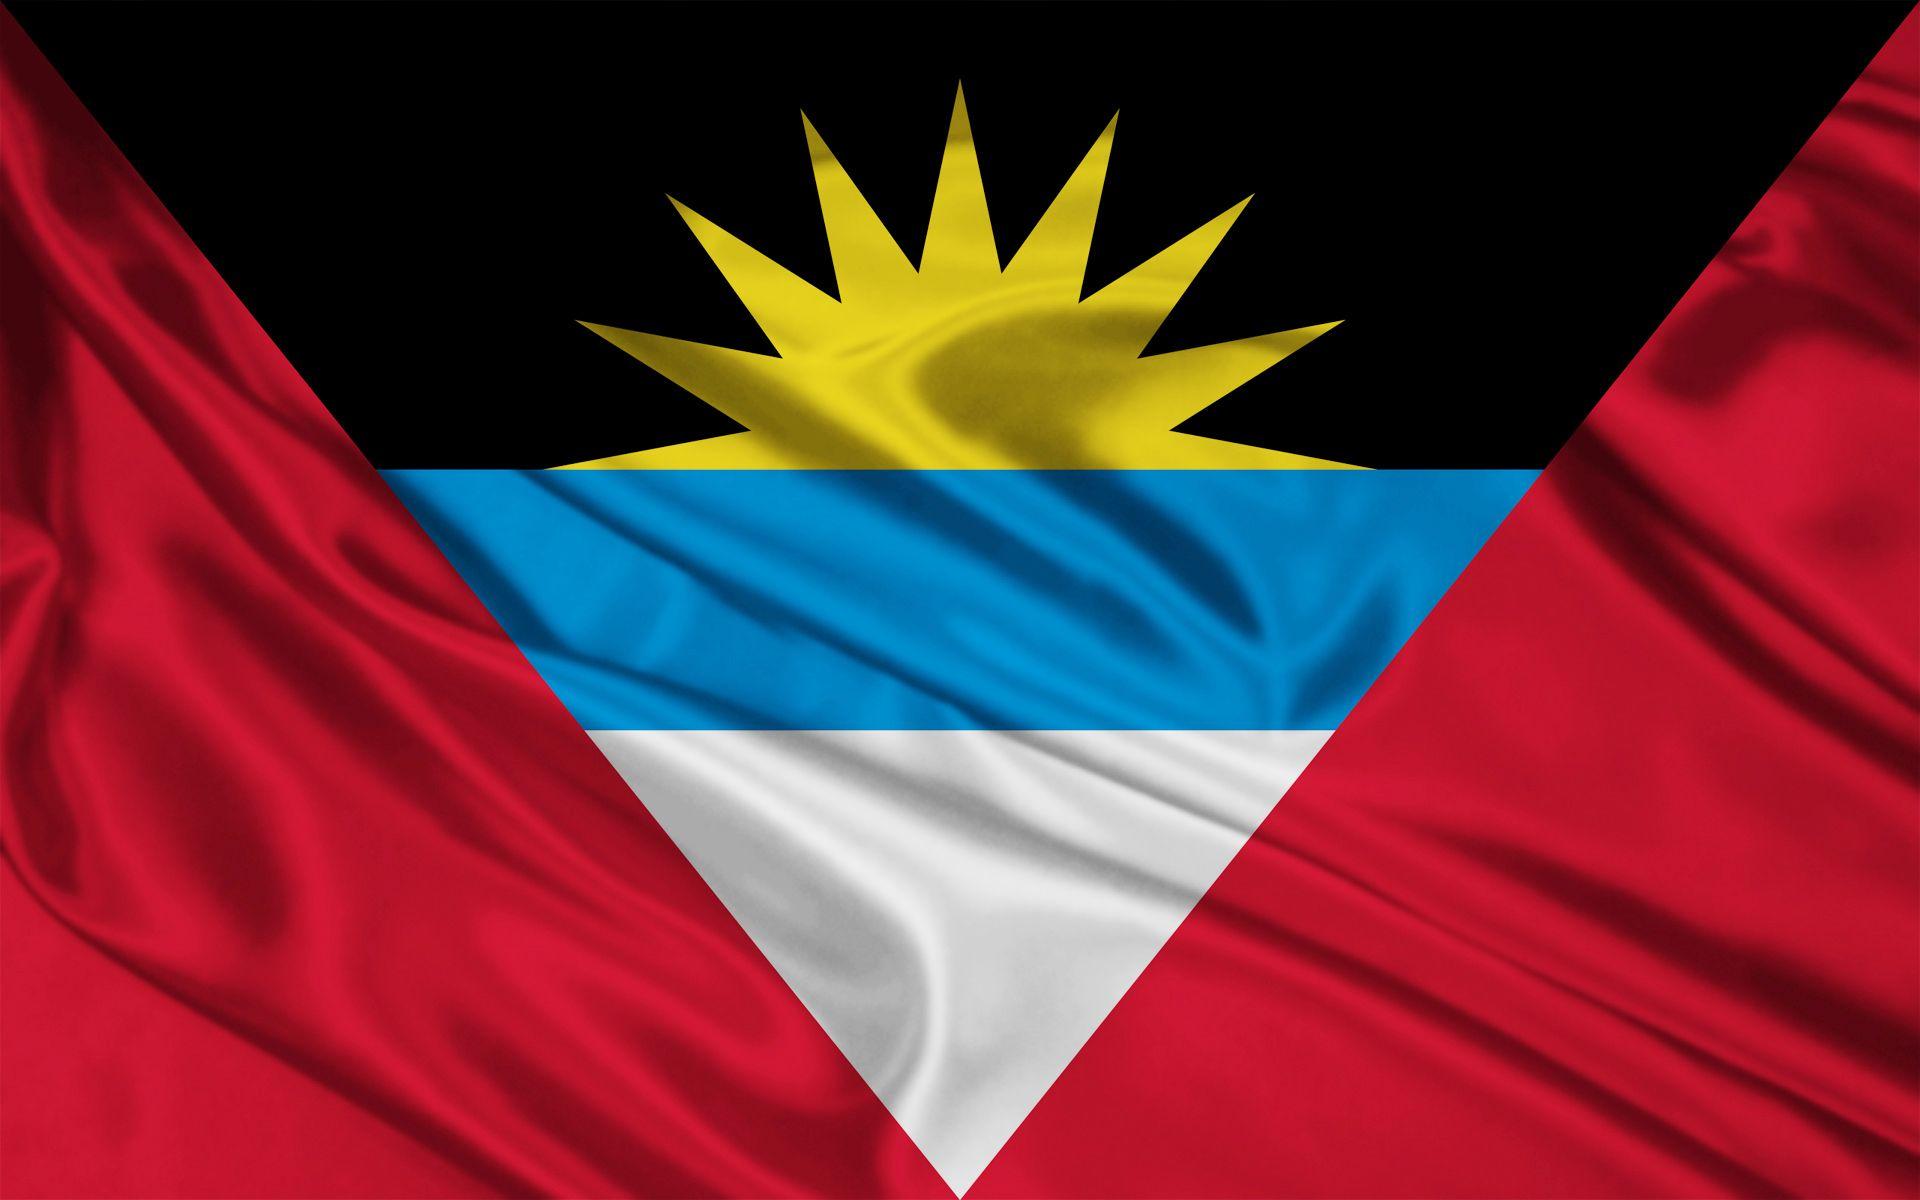 Antigua and Barbuda Flag wallpaper. Antigua and Barbuda Flag